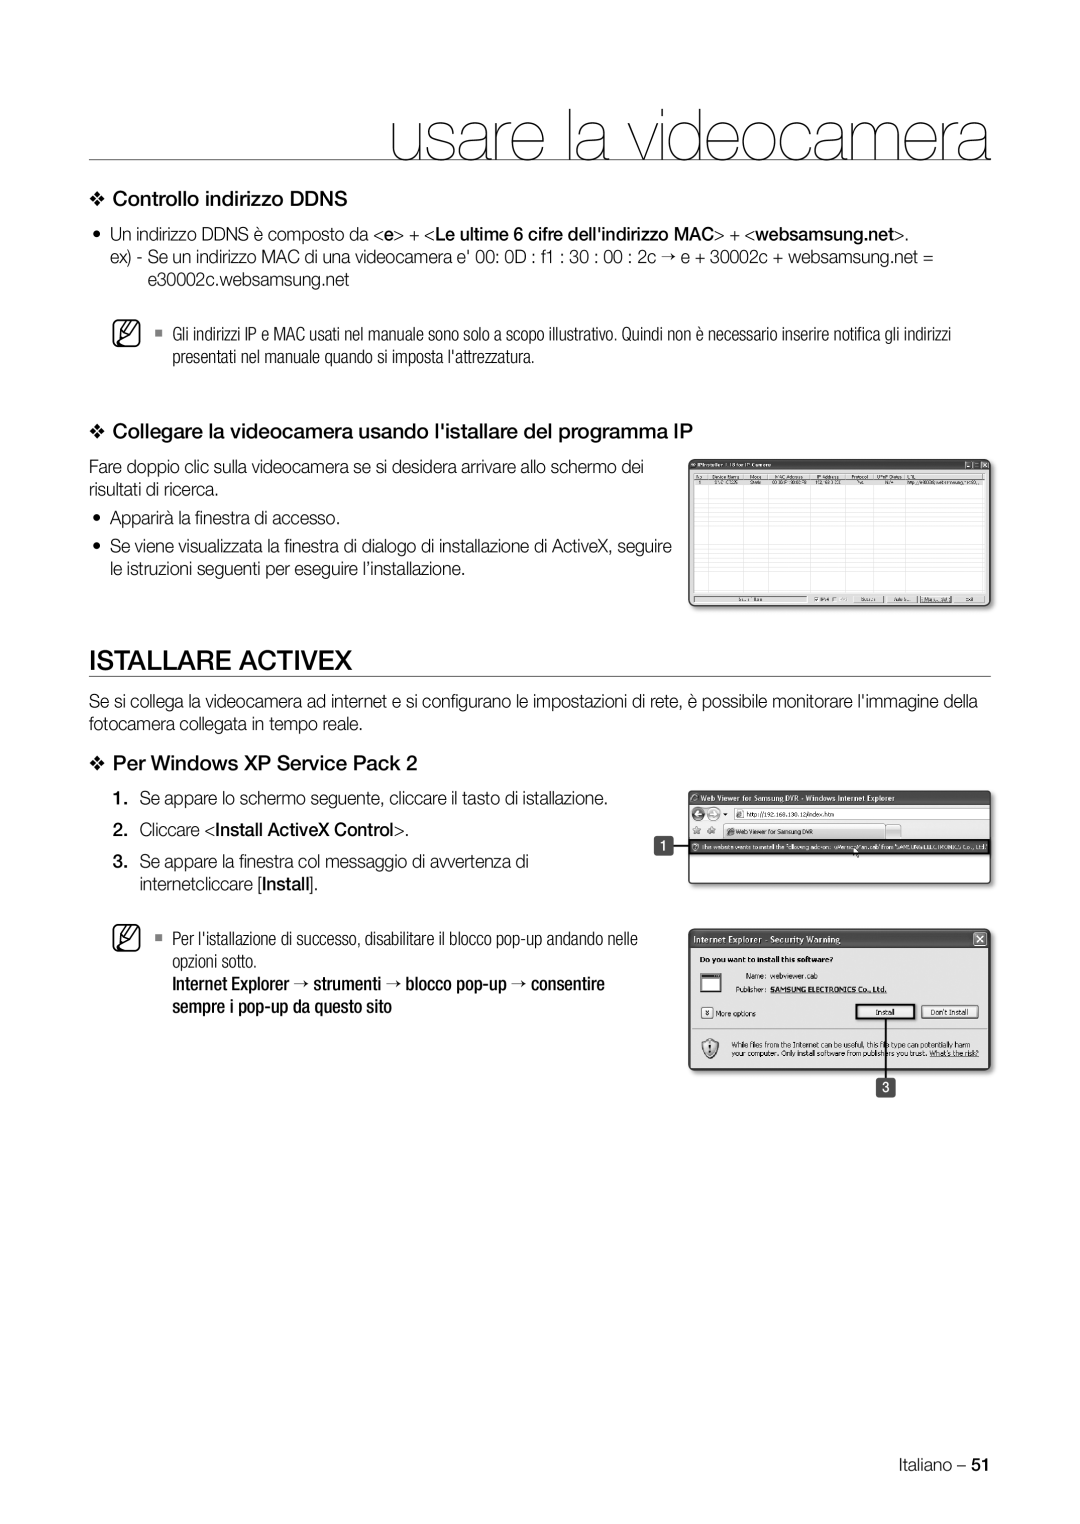 Samsung SNC-C7225P manual Istallare Activex, Controllo indirizzo Ddns, Per Windows XP Service Pack, E30002c.websamsung.net 